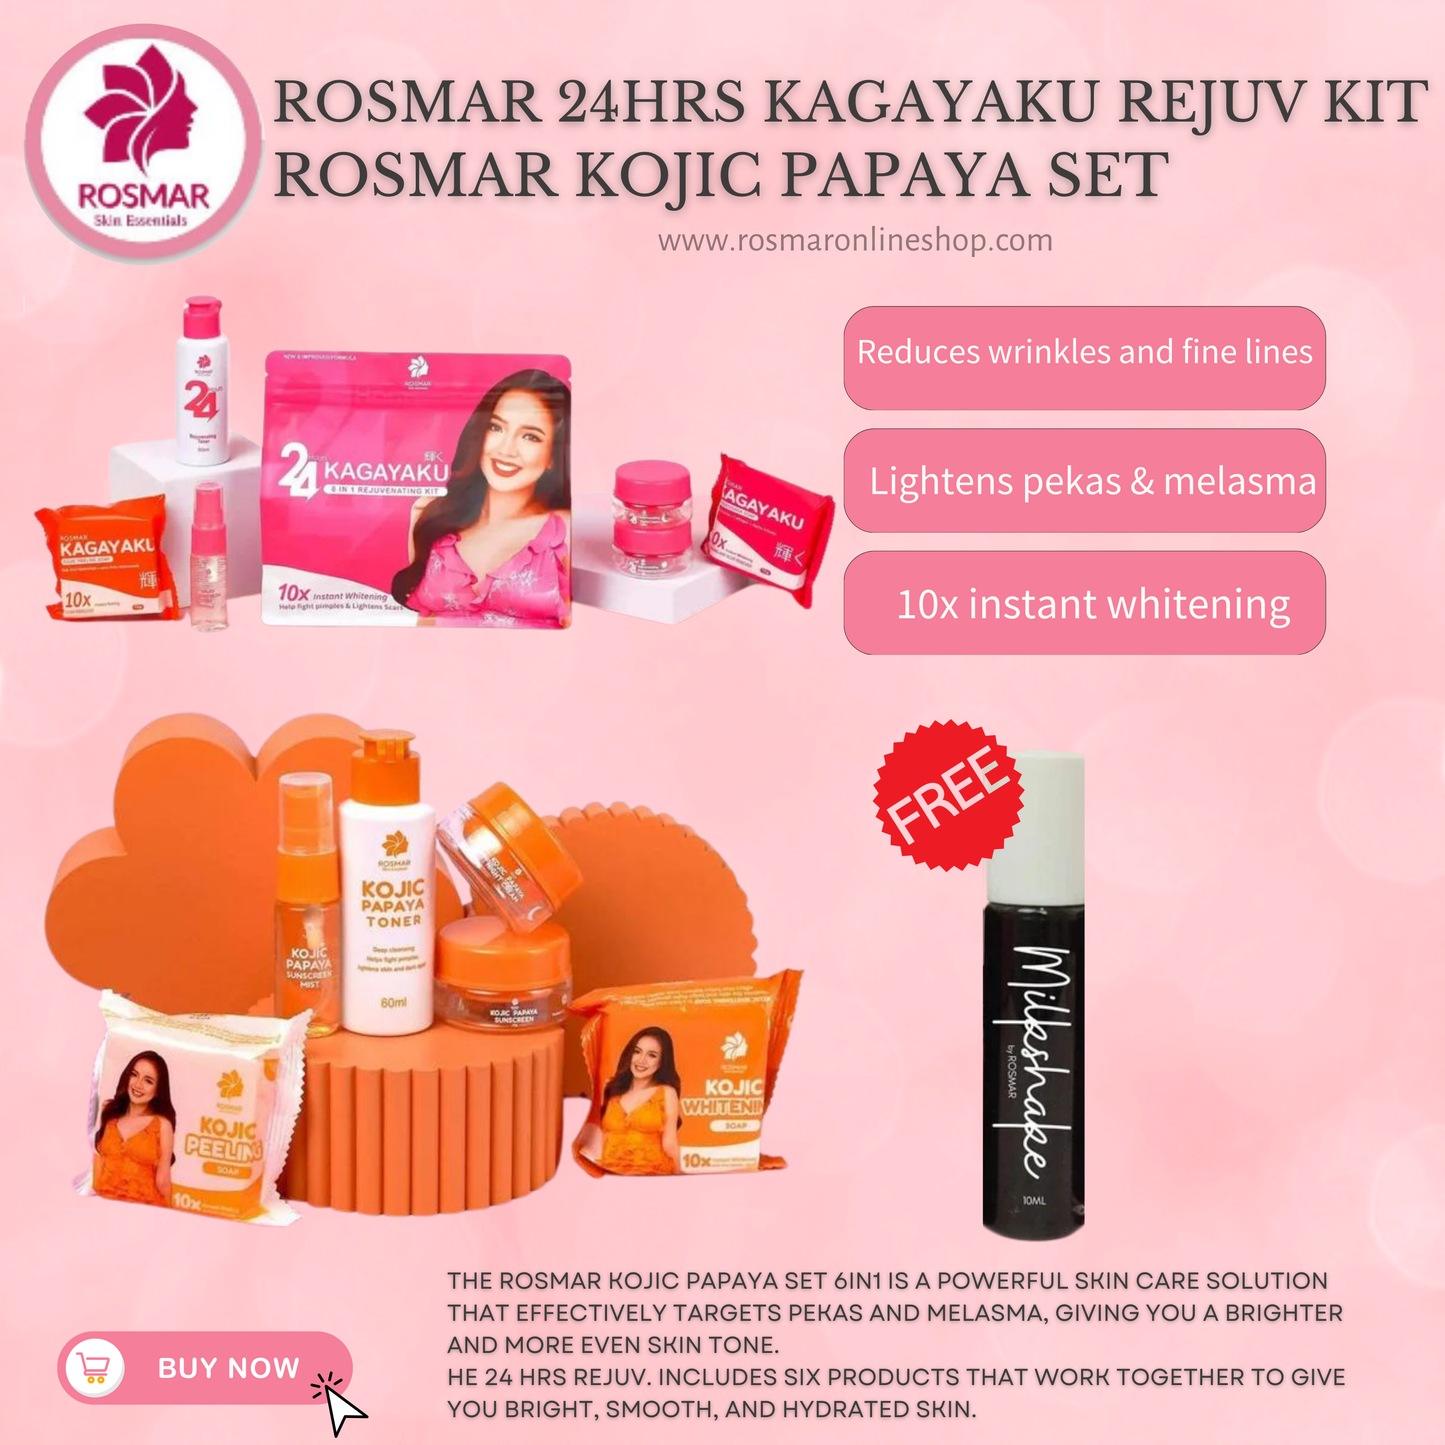 Rosmar REJUV - 24hrs Kagayaku Rejuvenating kit in 6in1 Pack Skincare Skin Repair Anti Aging Set